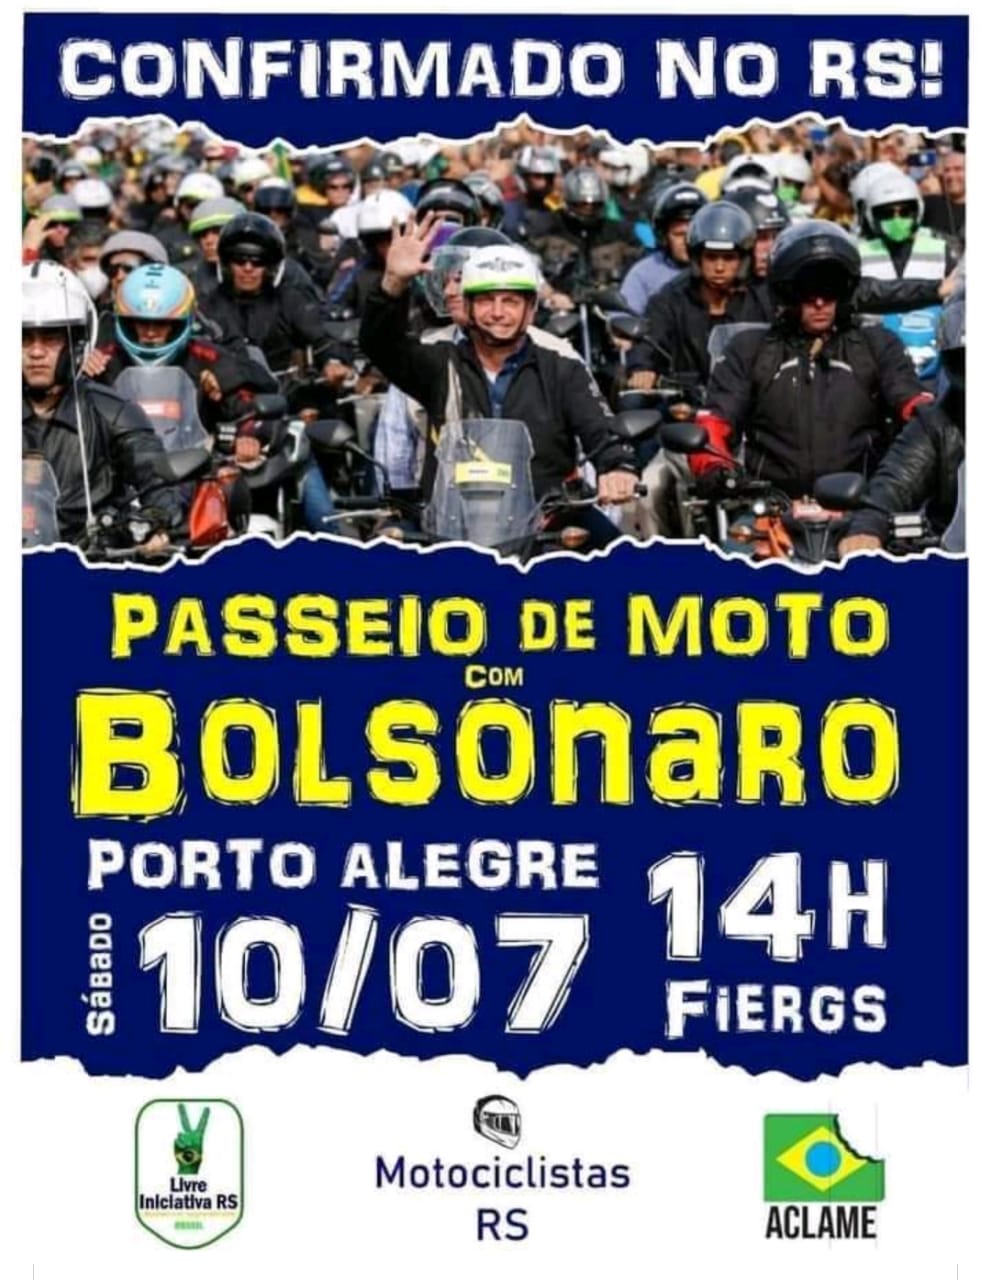 Passeio de moto com o presidente Bolsonaro em Porto Alegre-RS